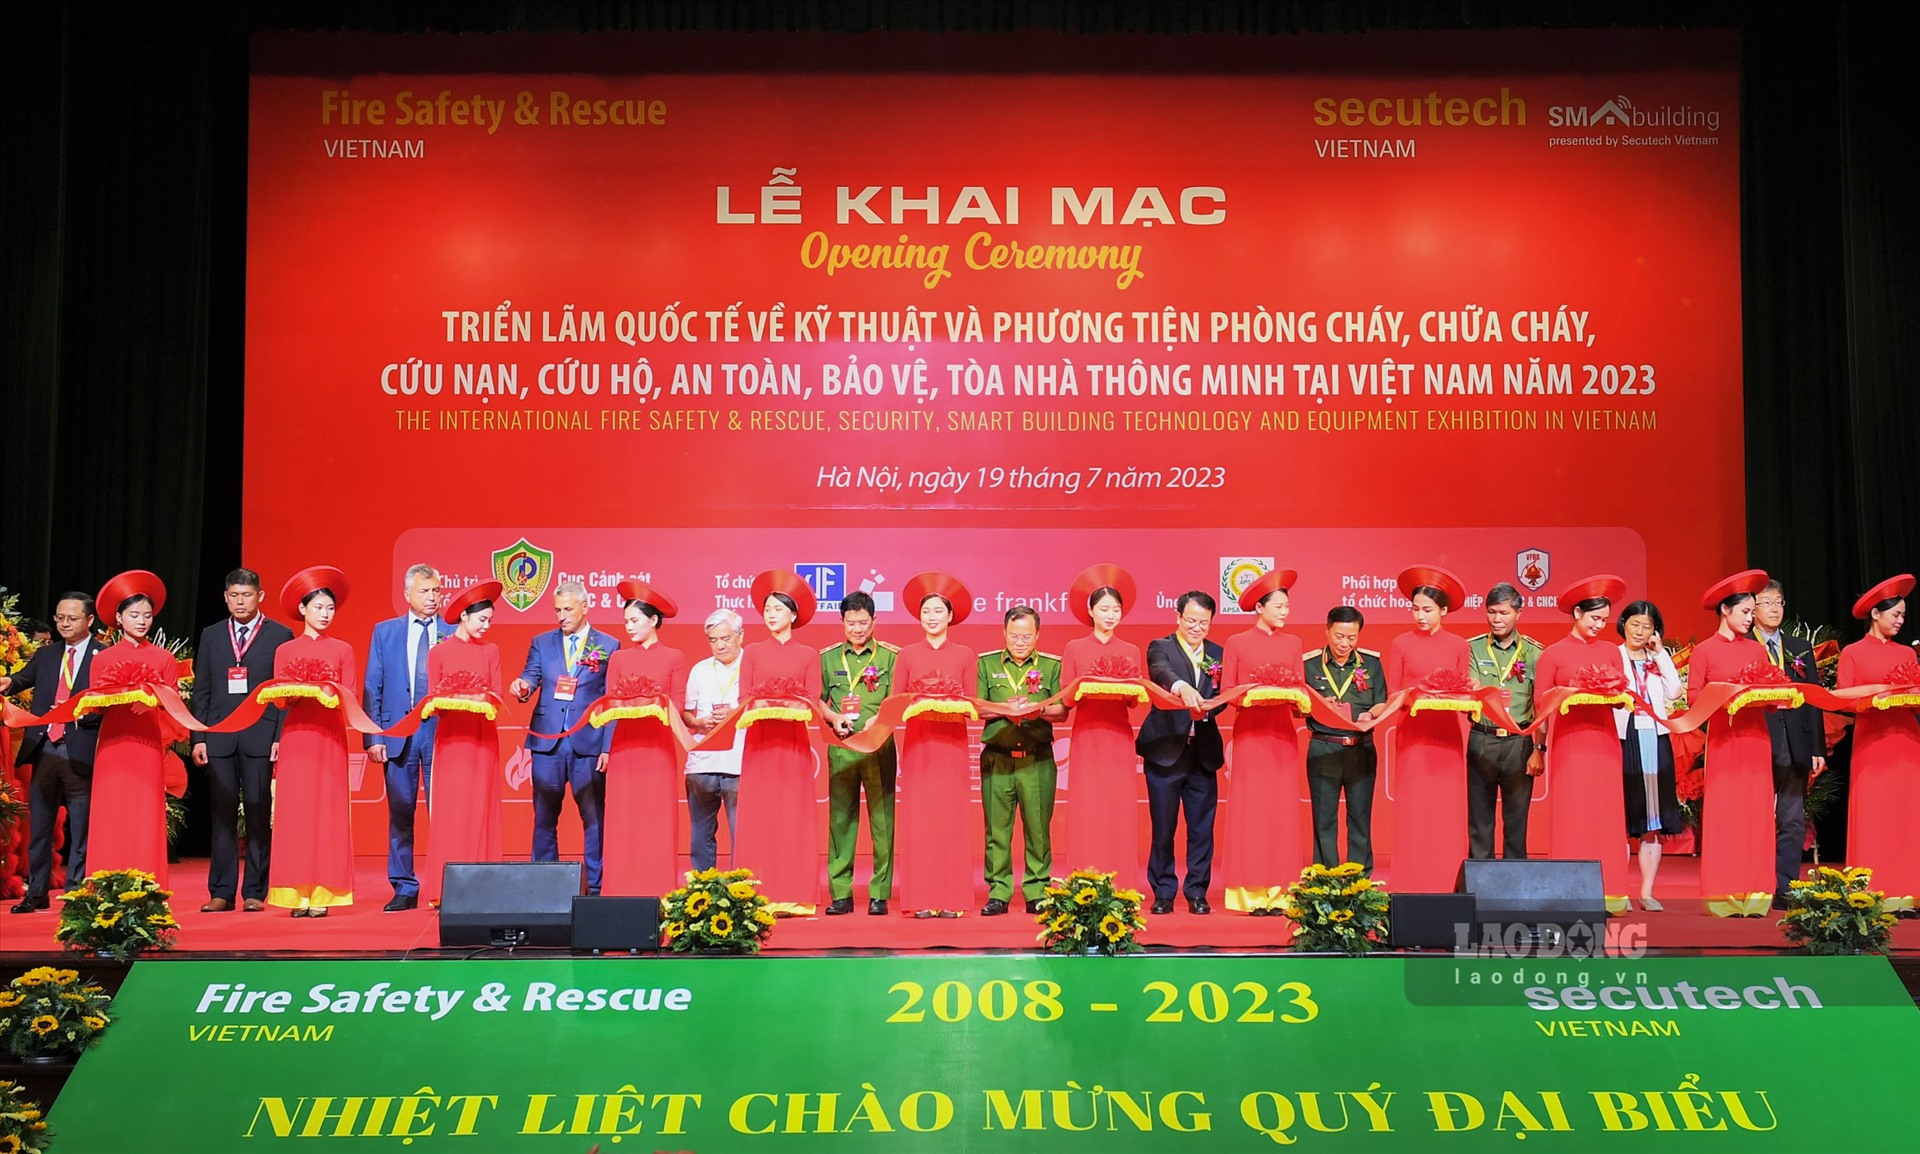 Sáng 19.7, tại Hà Nội, lễ khai mạc triển lãm quốc tế về kỹ thuật và phương tiện phòng cháy, chữa cháy, cứu nạn, cứu hộ và thiết bị an ninh, an toàn bảo vệ năm 2023 chính thức diễn ra tại Cung Văn hóa Hữu nghị Việt - Xô.